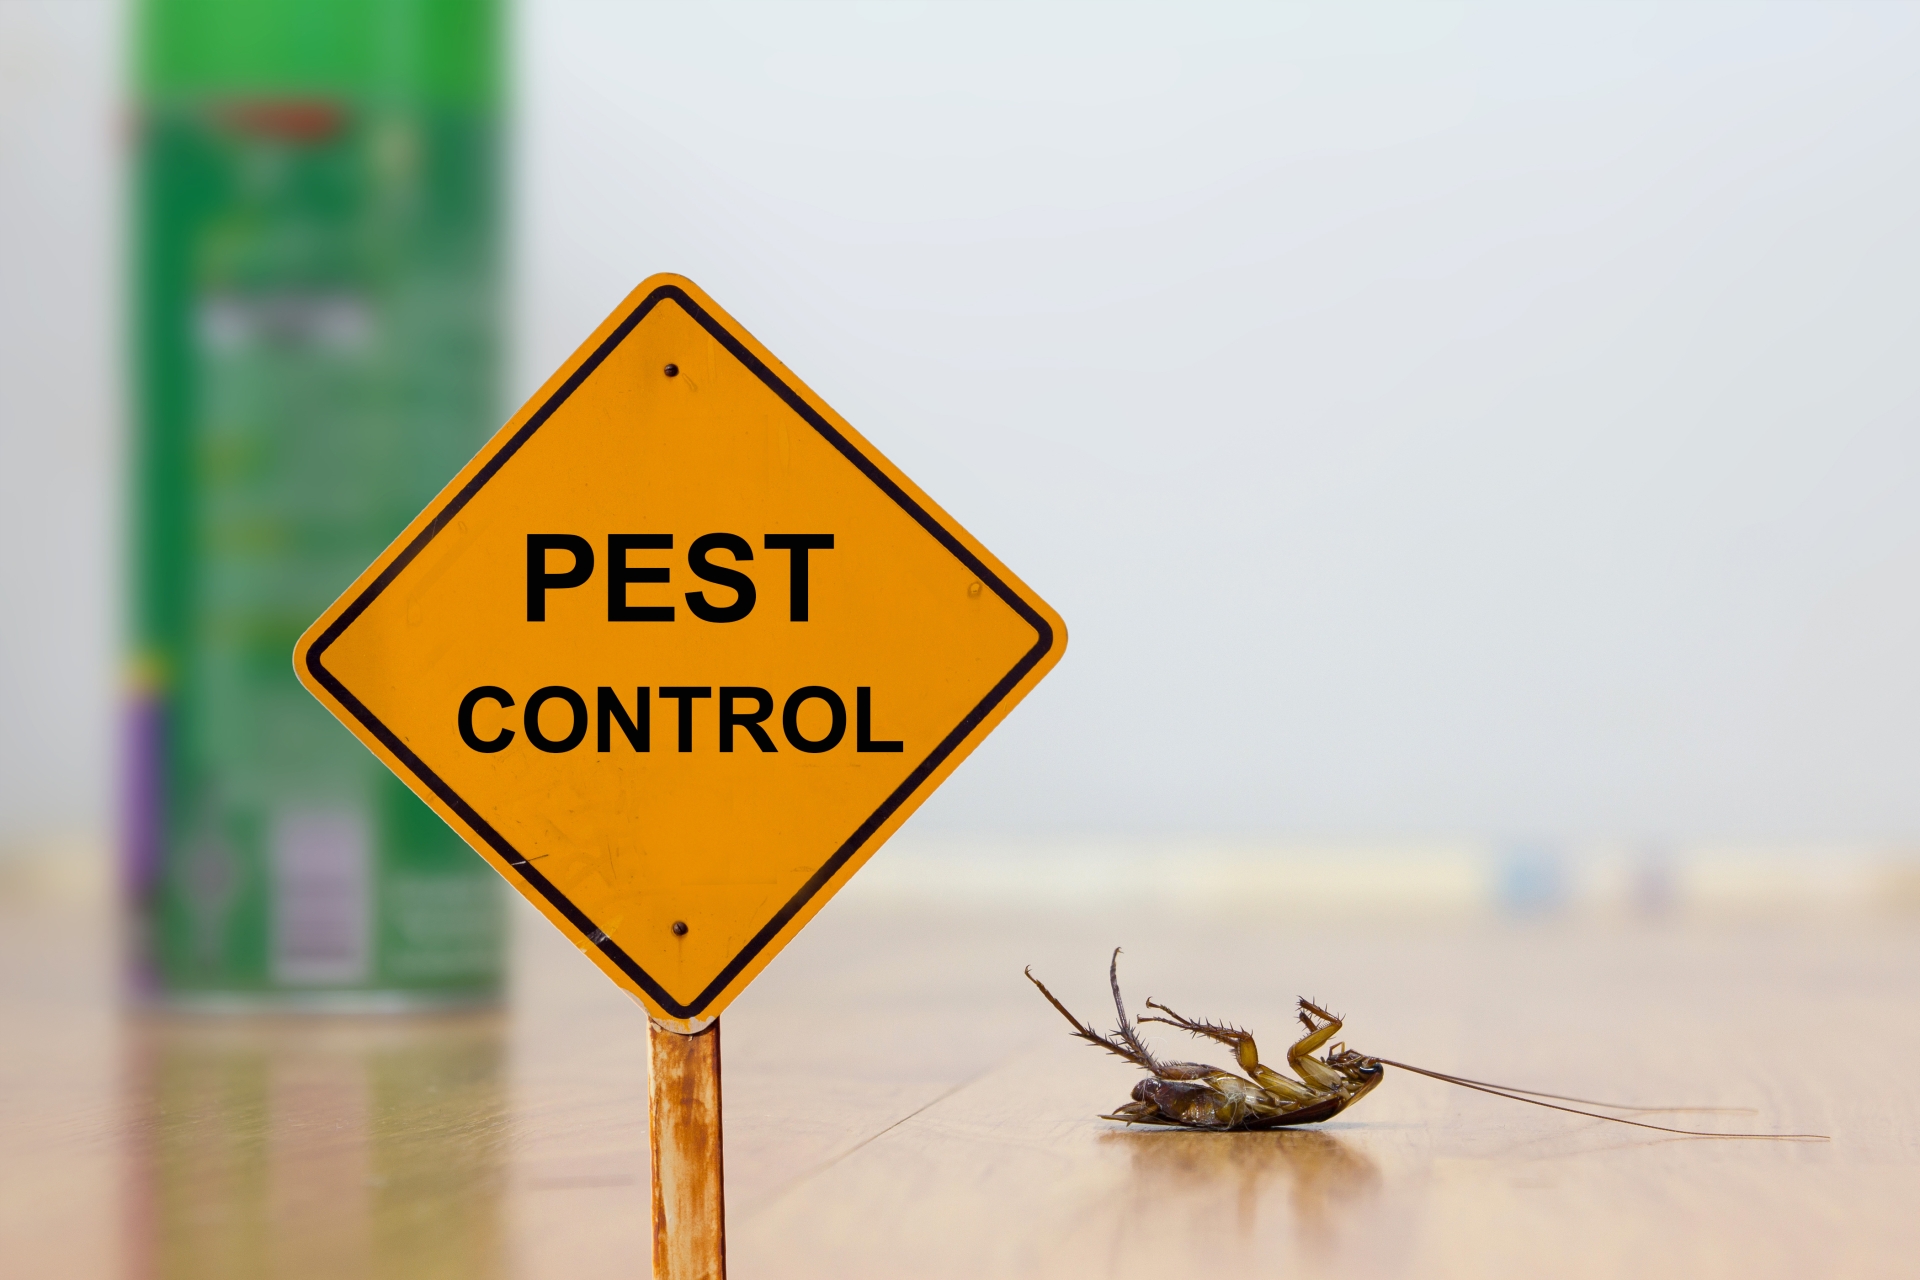 24 Hour Pest Control, Pest Control in Dagenham, RM8, RM9, RM10. Call Now 020 8166 9746